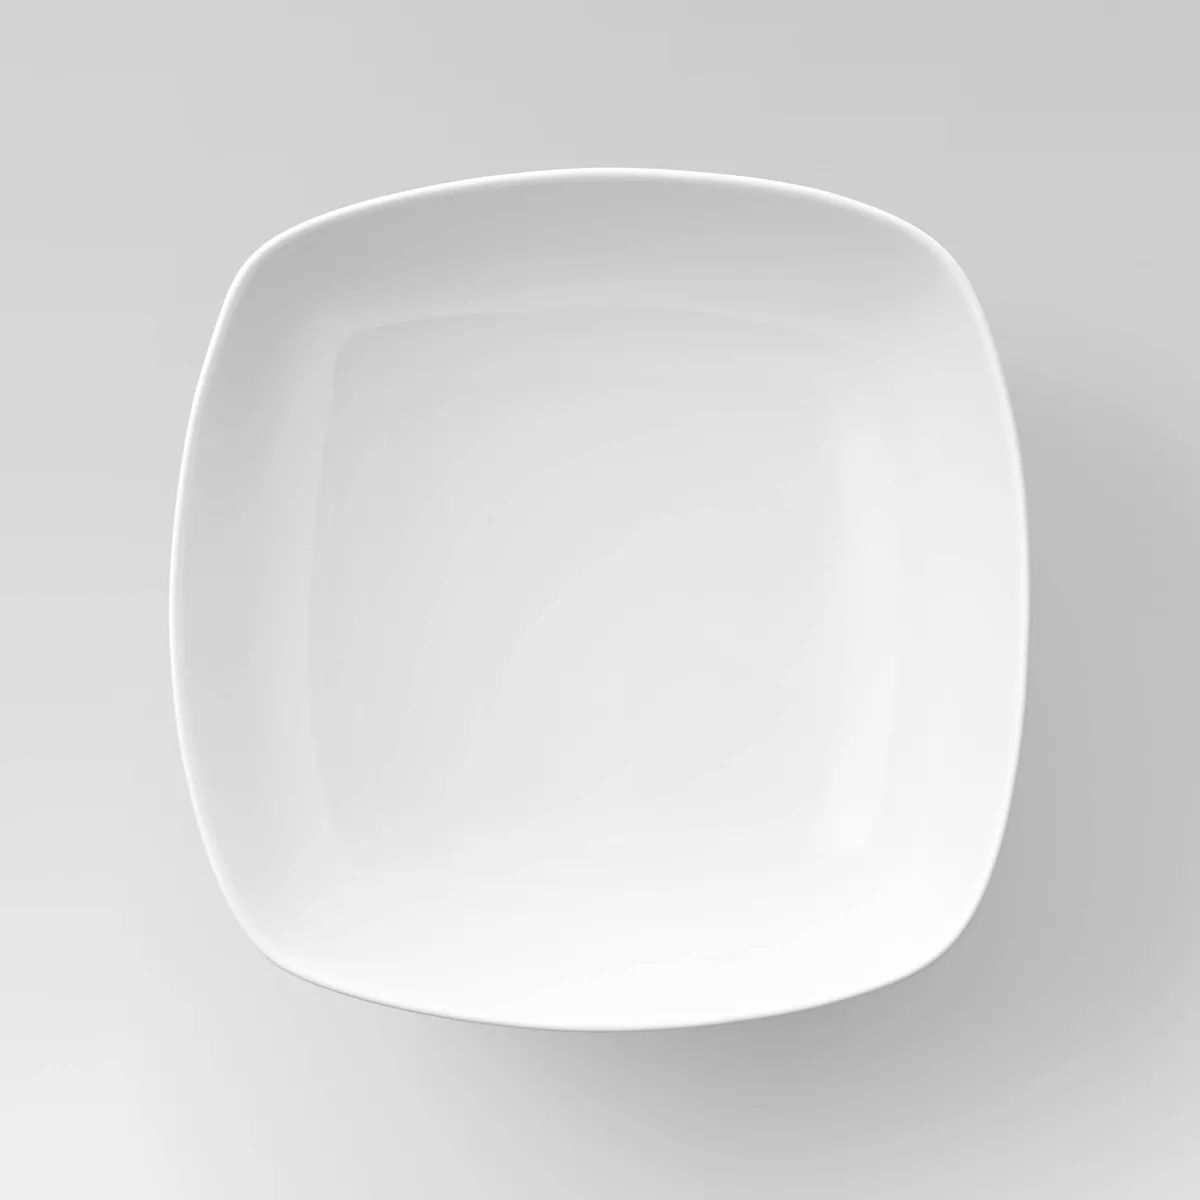 Square Serving Bowl 200oz Porcelain - Threshold™ | Target